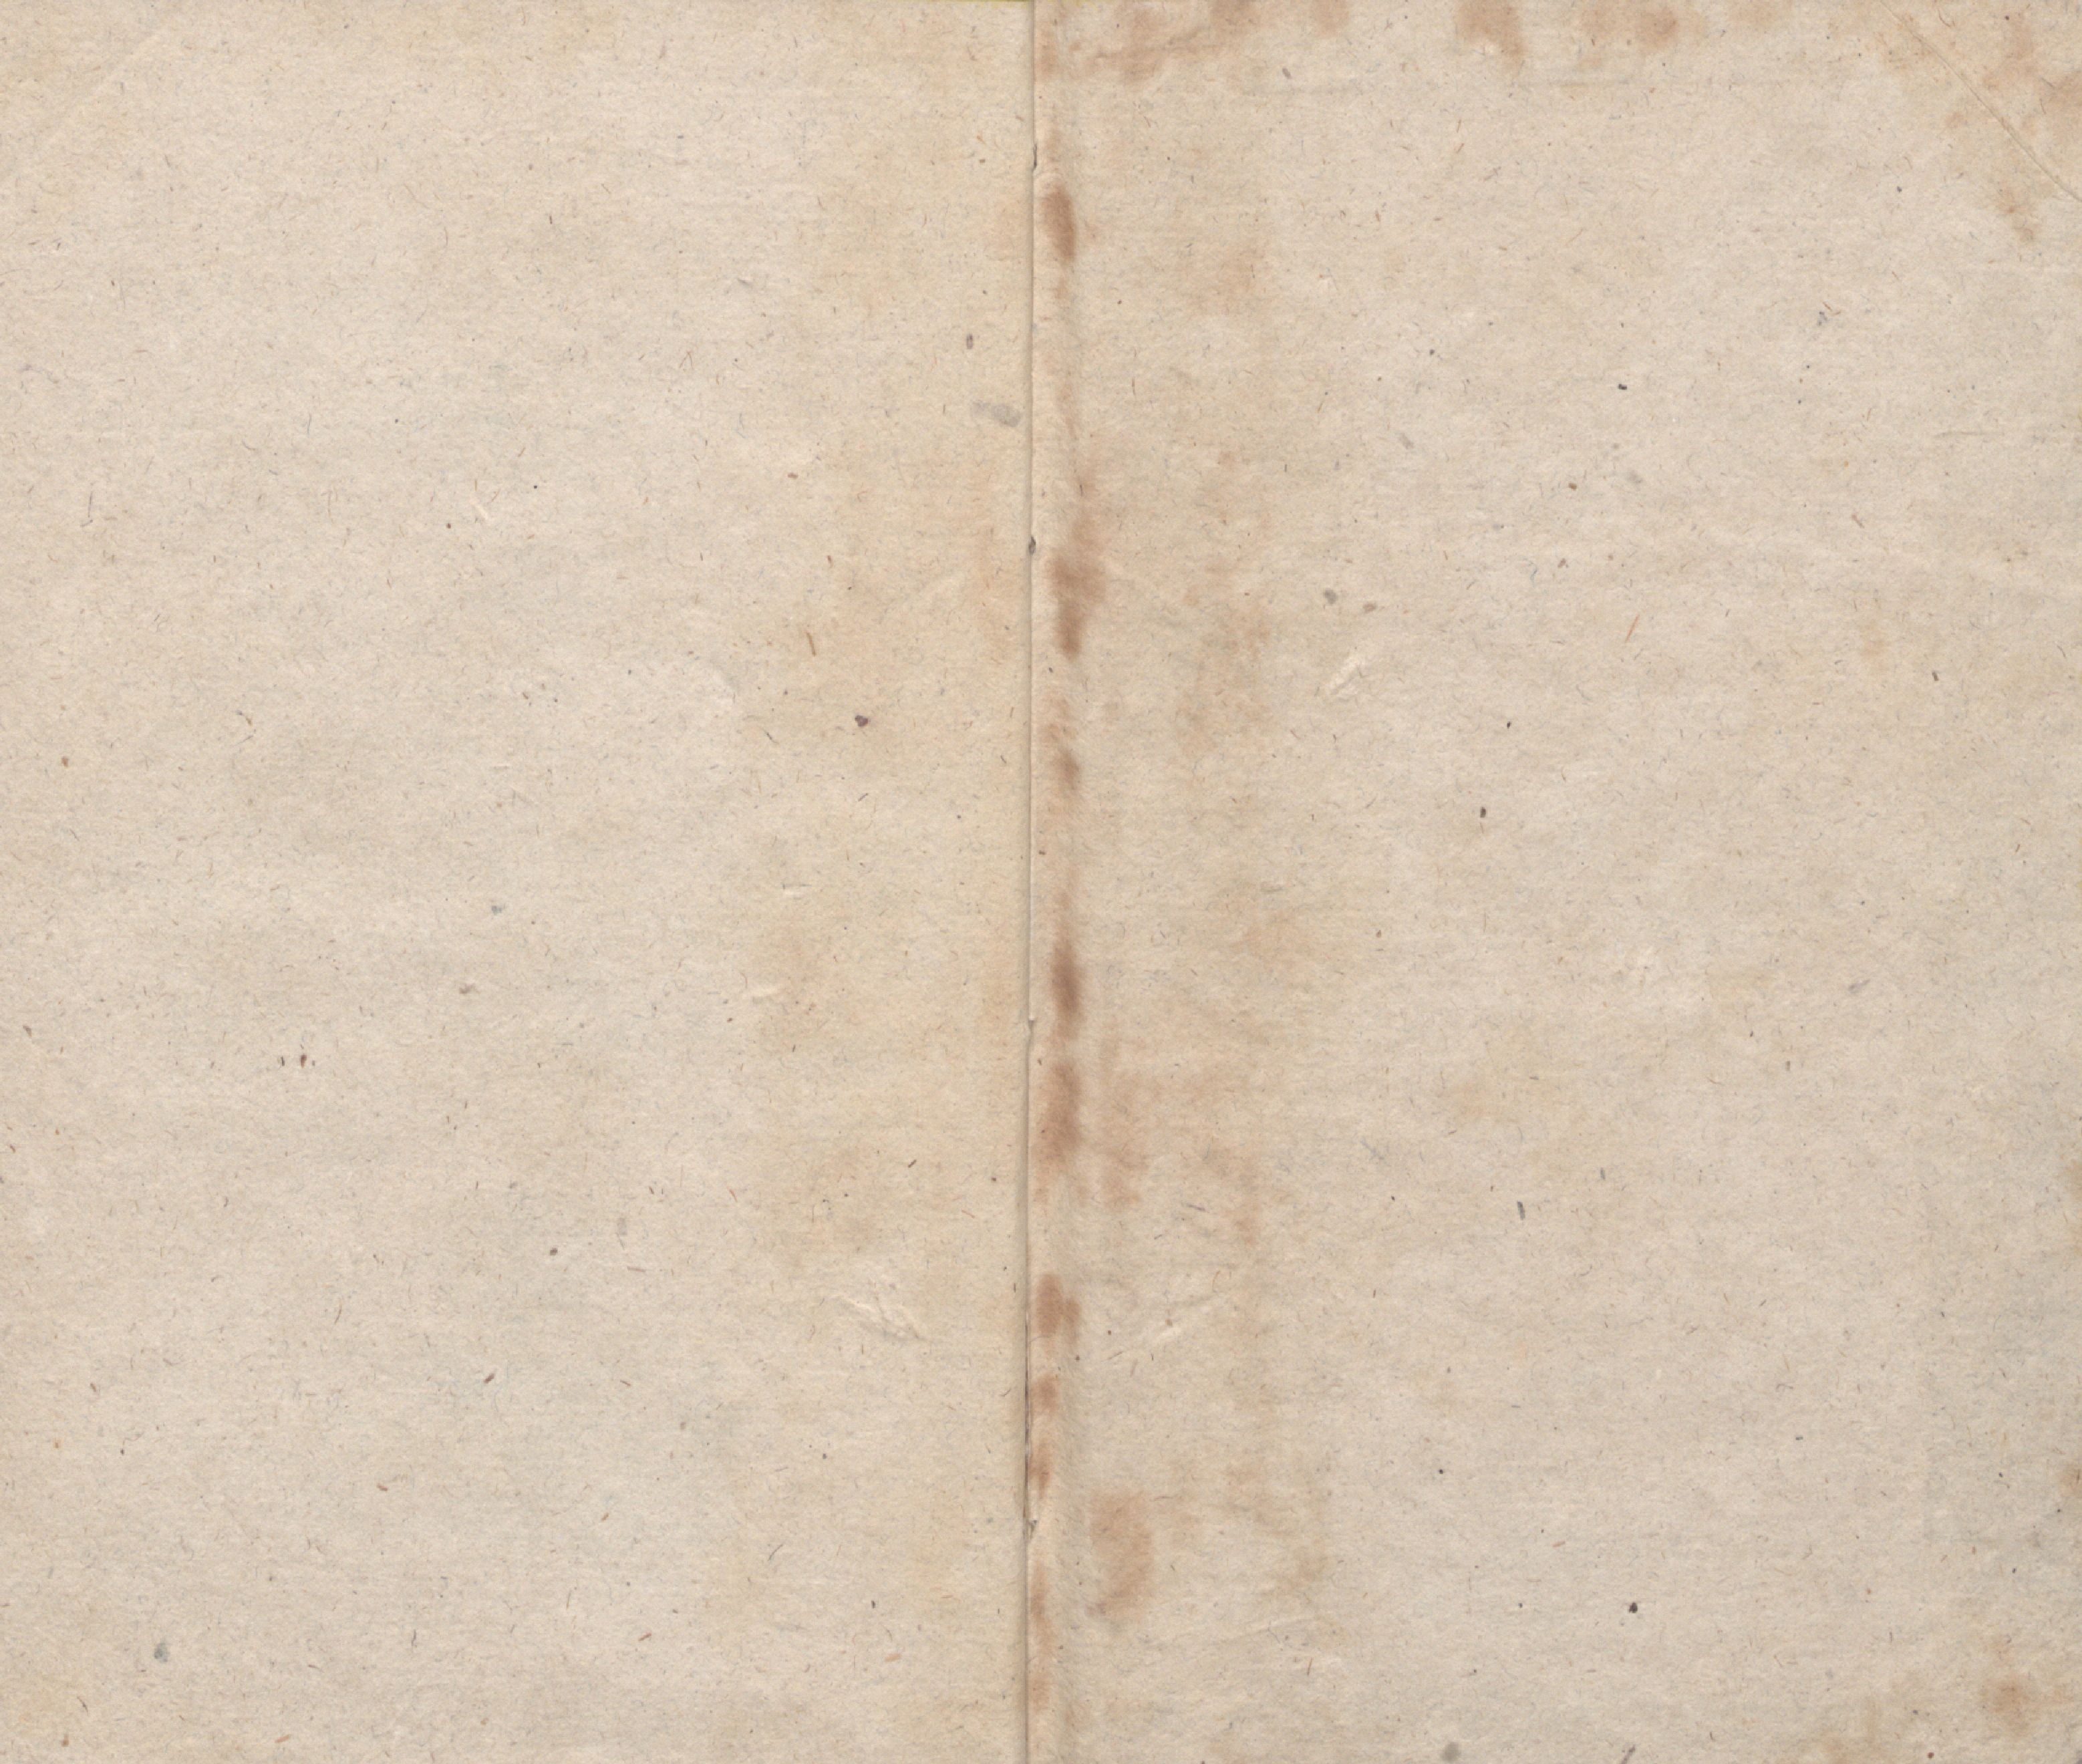 Lillikessed [1] (1814) | 12. Tagaleht